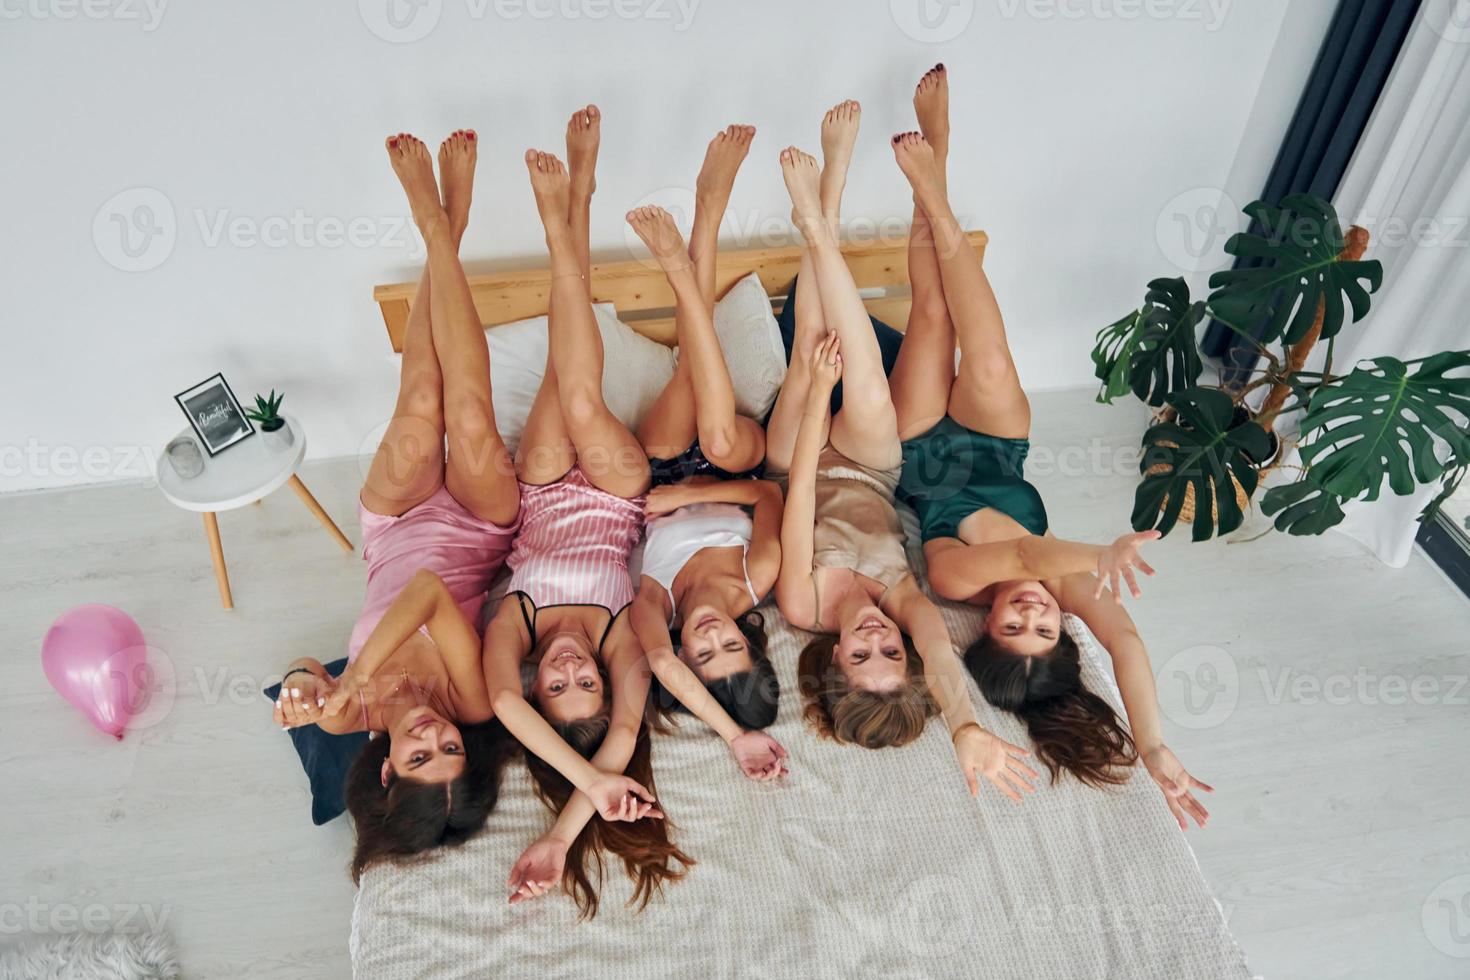 avec les jambes vers le haut. groupe de femmes heureuses sexy qui est à un enterrement de vie de jeune fille photo